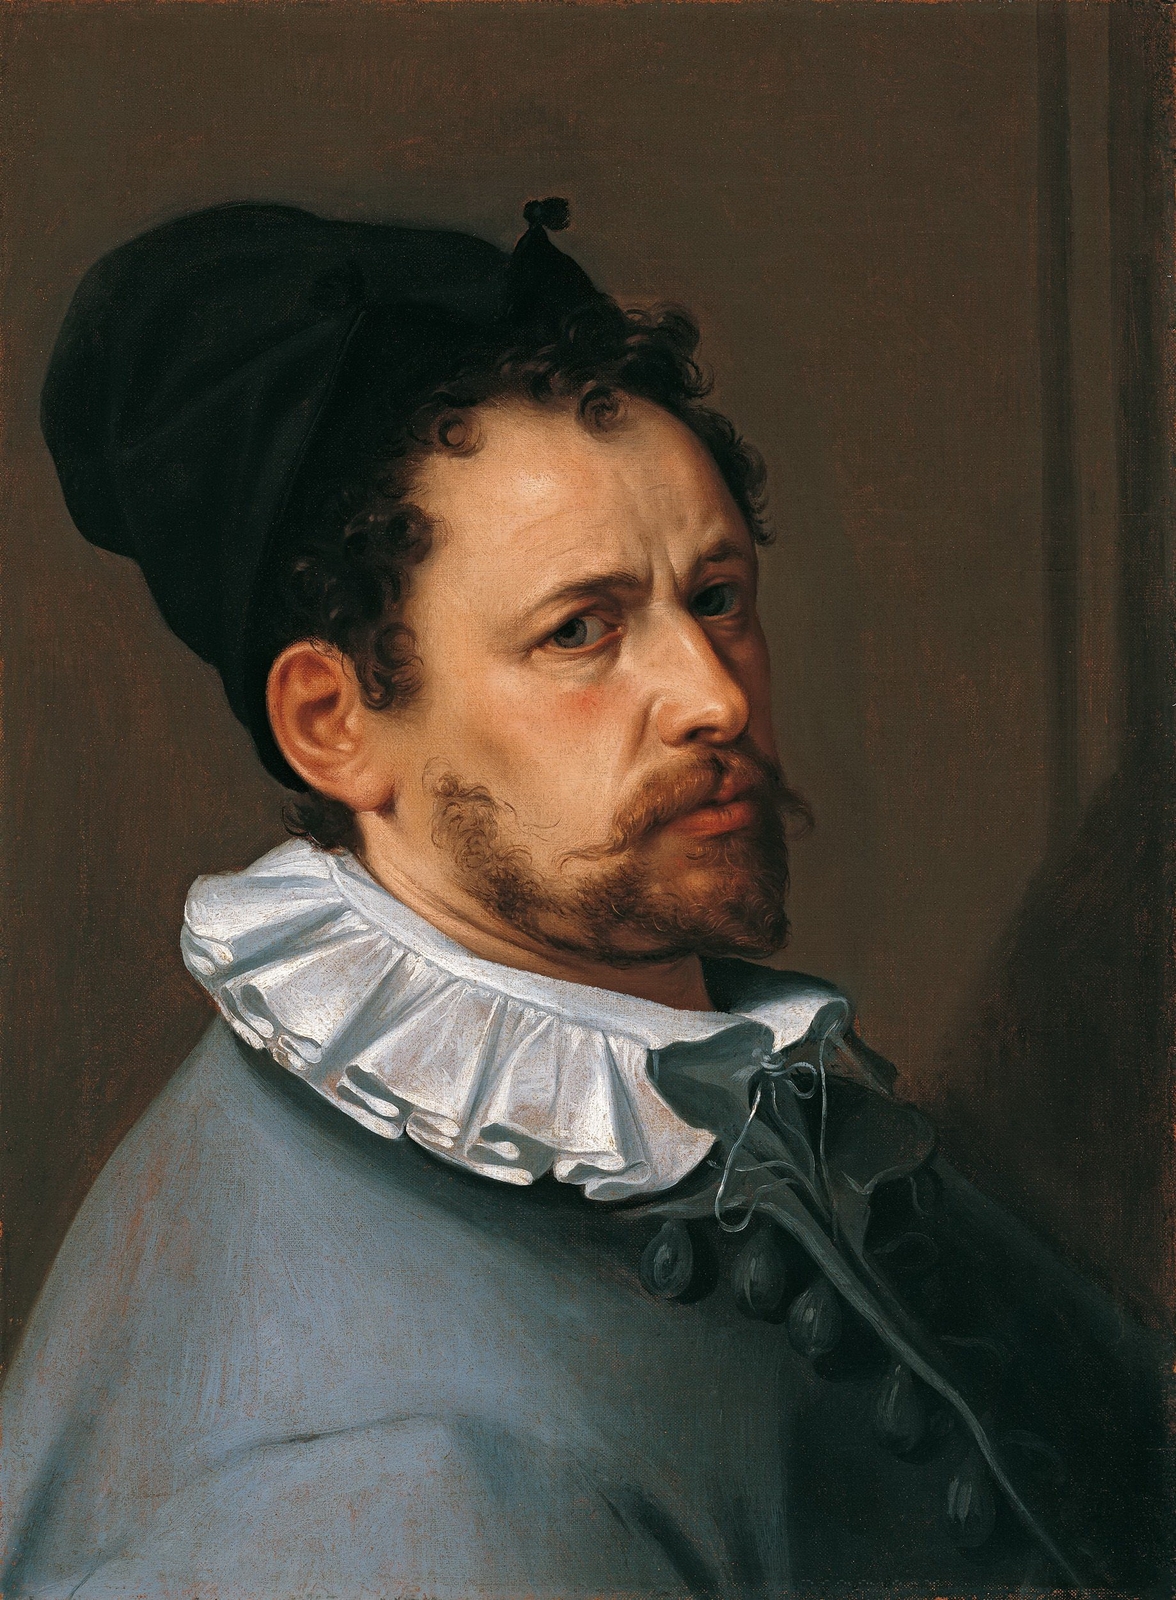 Bartholomaeus+Spranger-1546-1611 (48).jpg